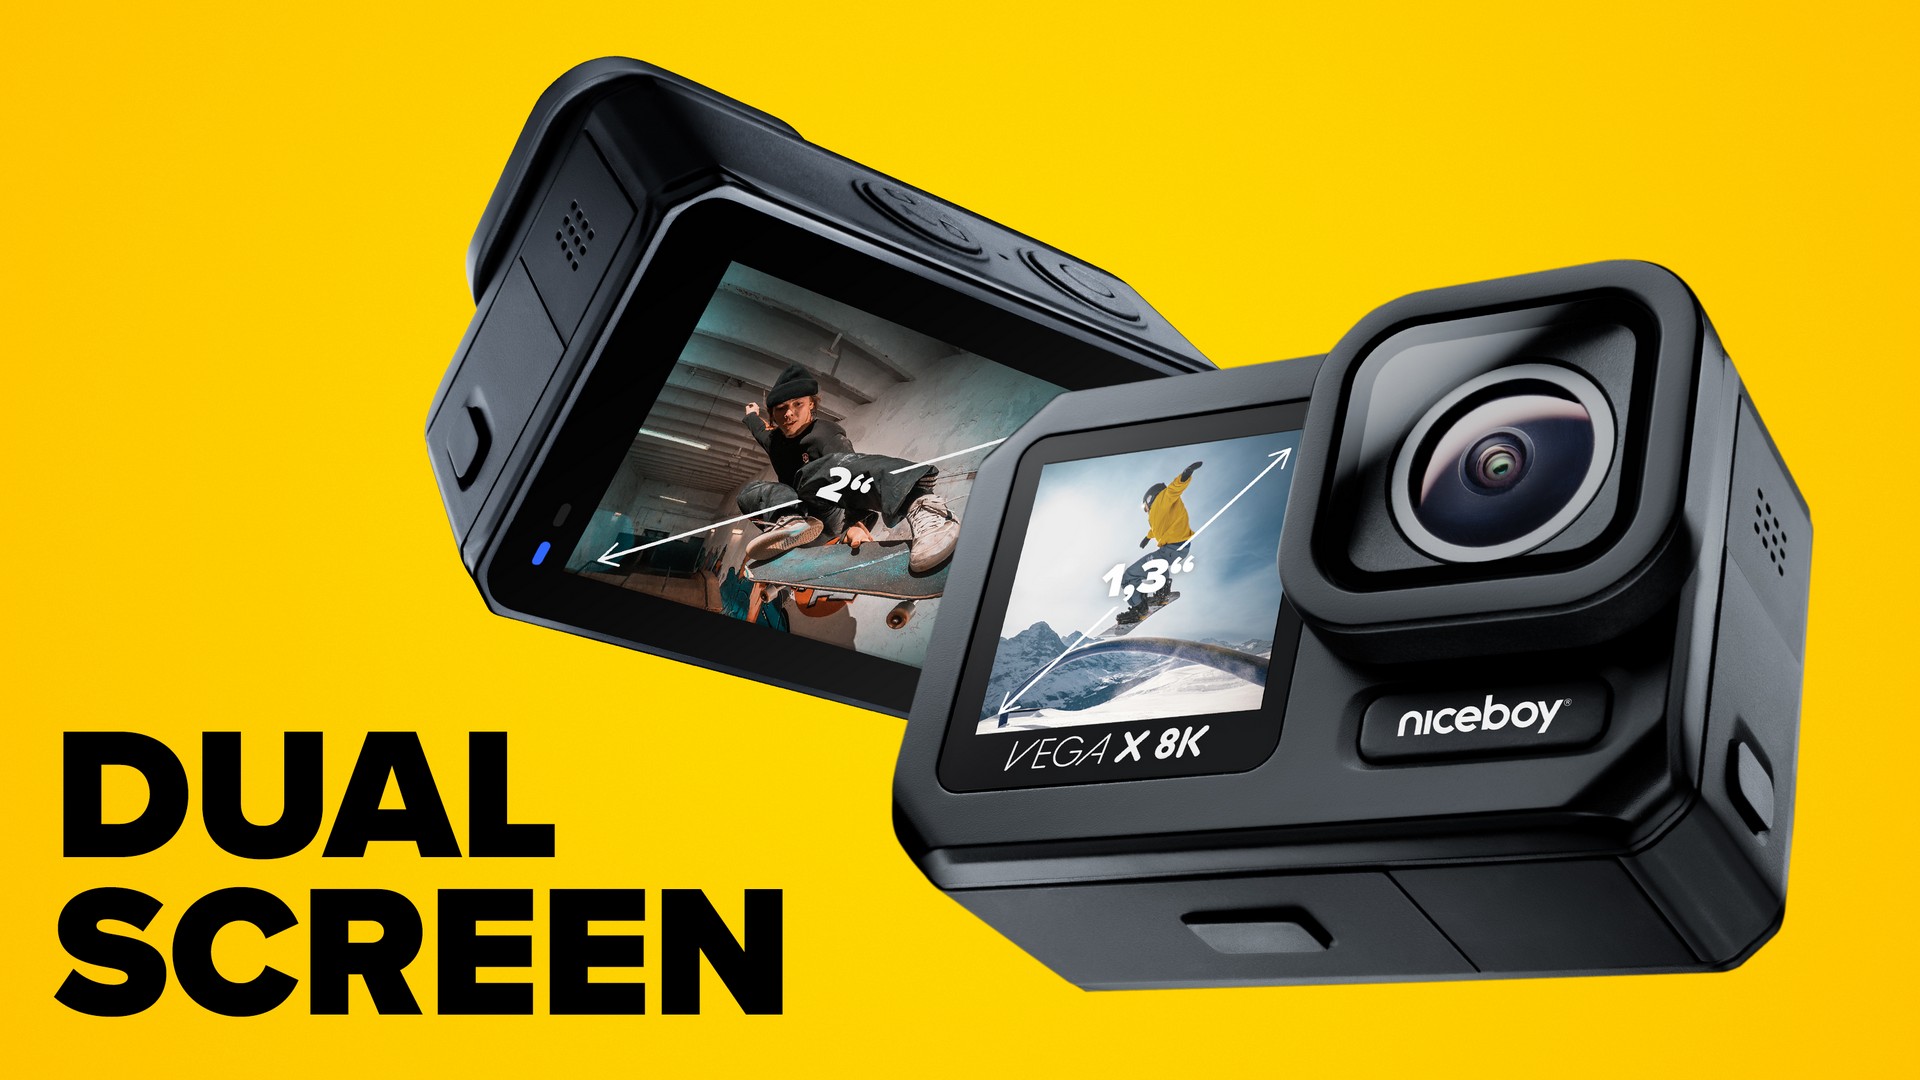 A Niceboy VEGA X 8K outdoor kamera elülső 1,3“ képernyővel és hátsó 2“ LTPS érintőképernyővel rendelkezik.